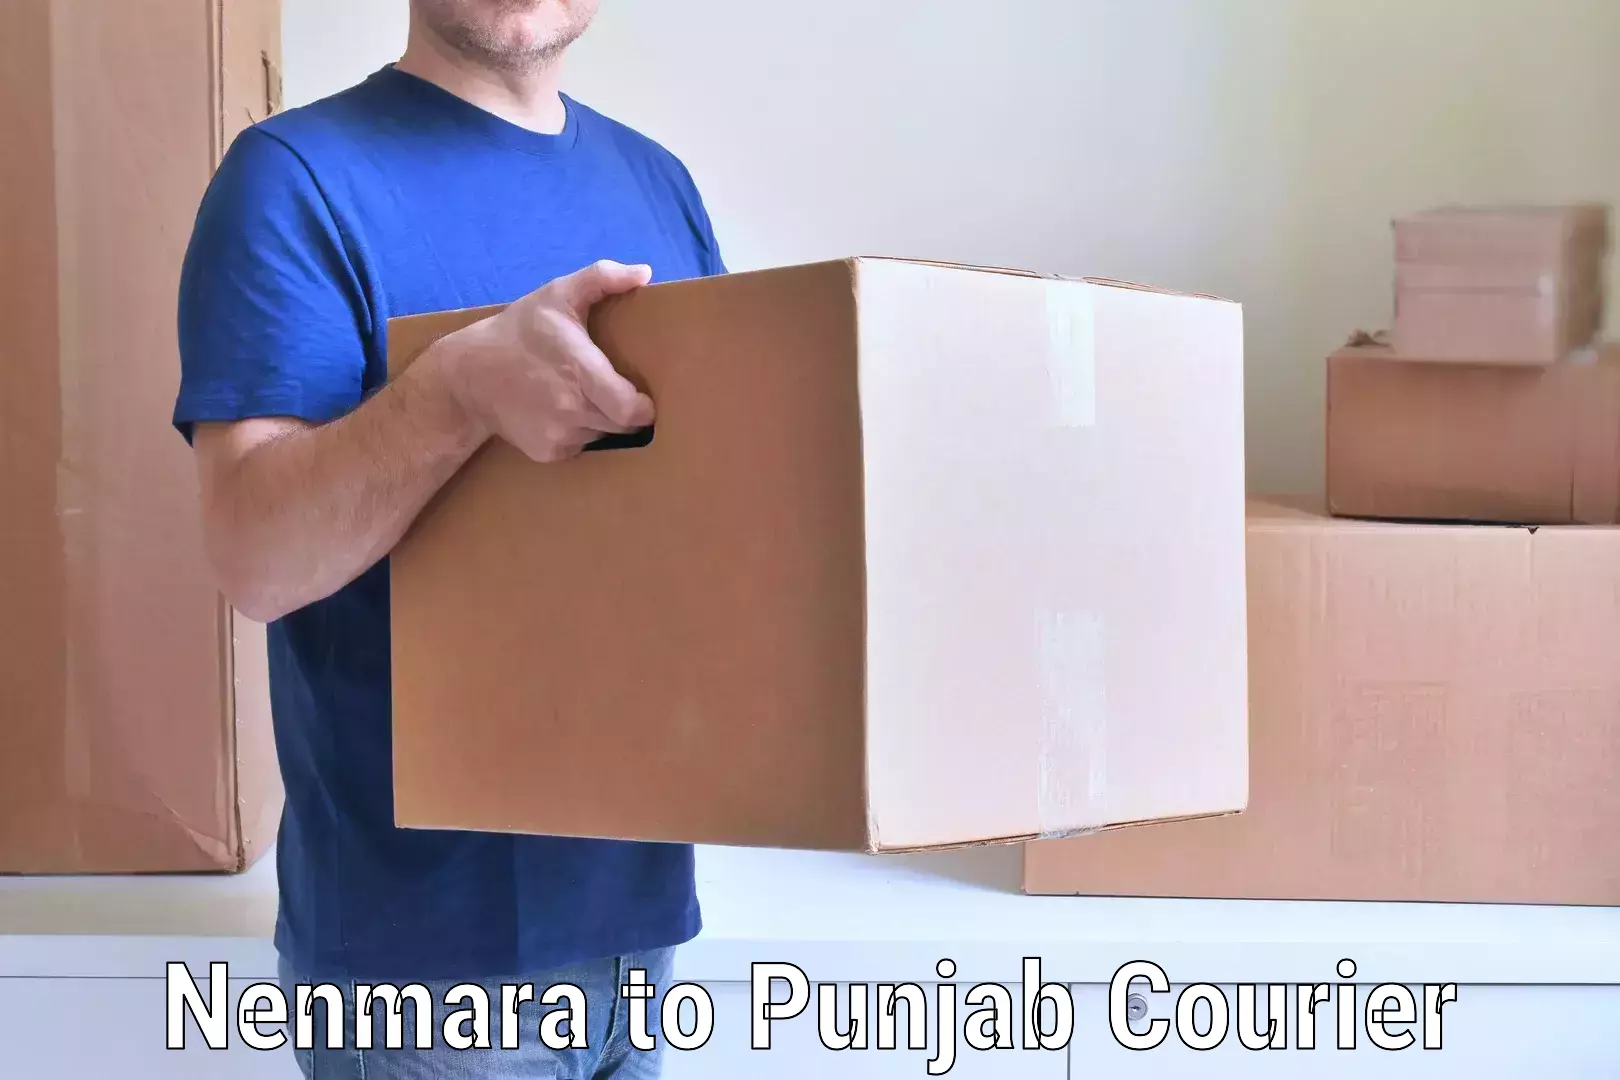 Nationwide furniture transport Nenmara to Punjab